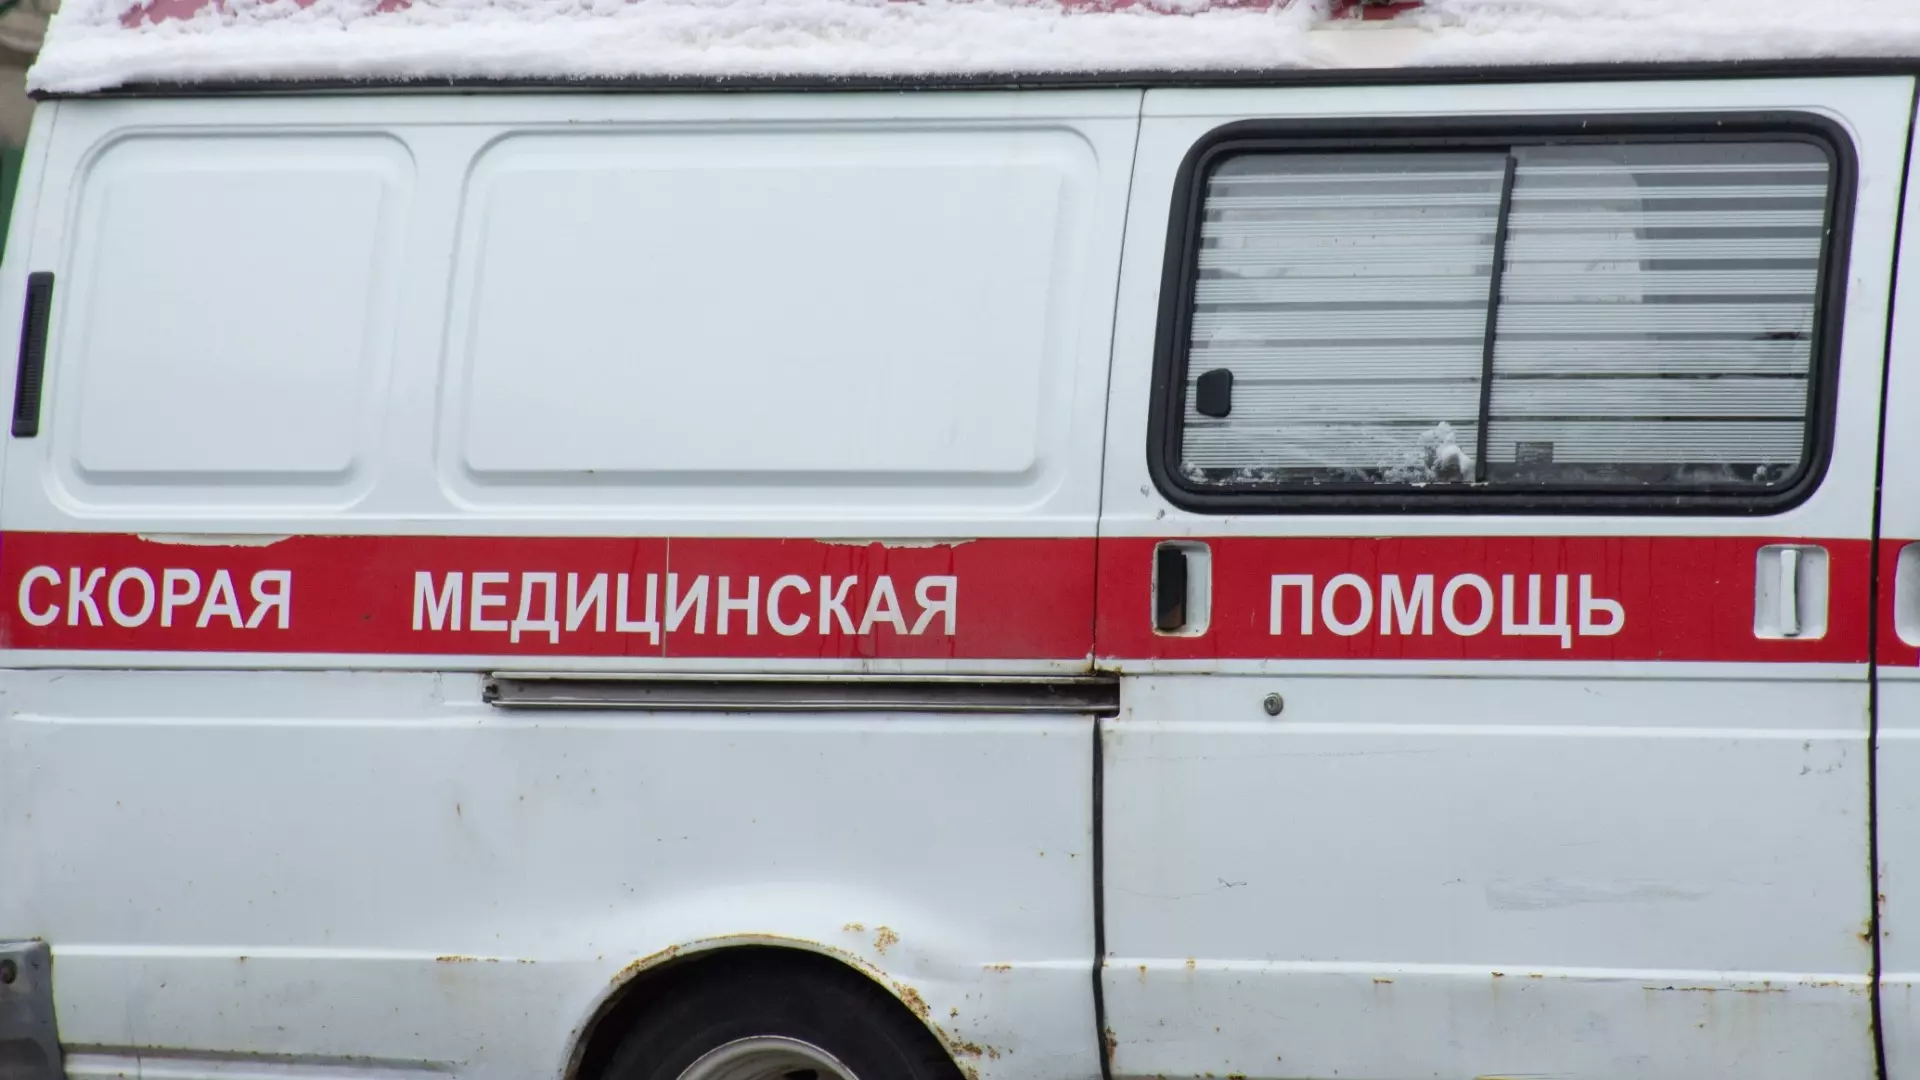 50-летний житель Старополтавского района Волгоградской области остался без руки